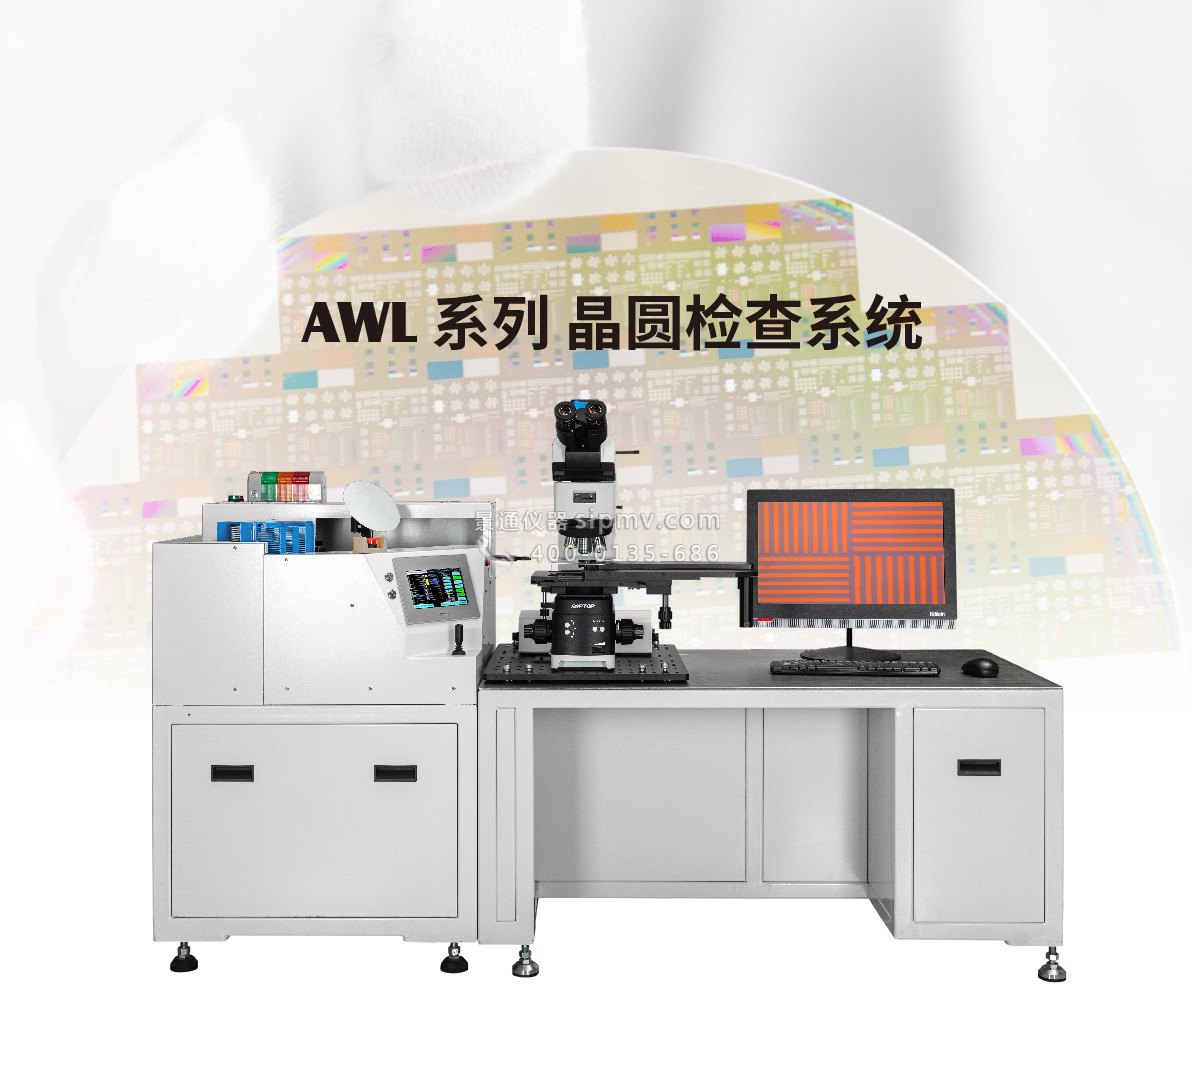 AWL显微镜晶圆检查系统